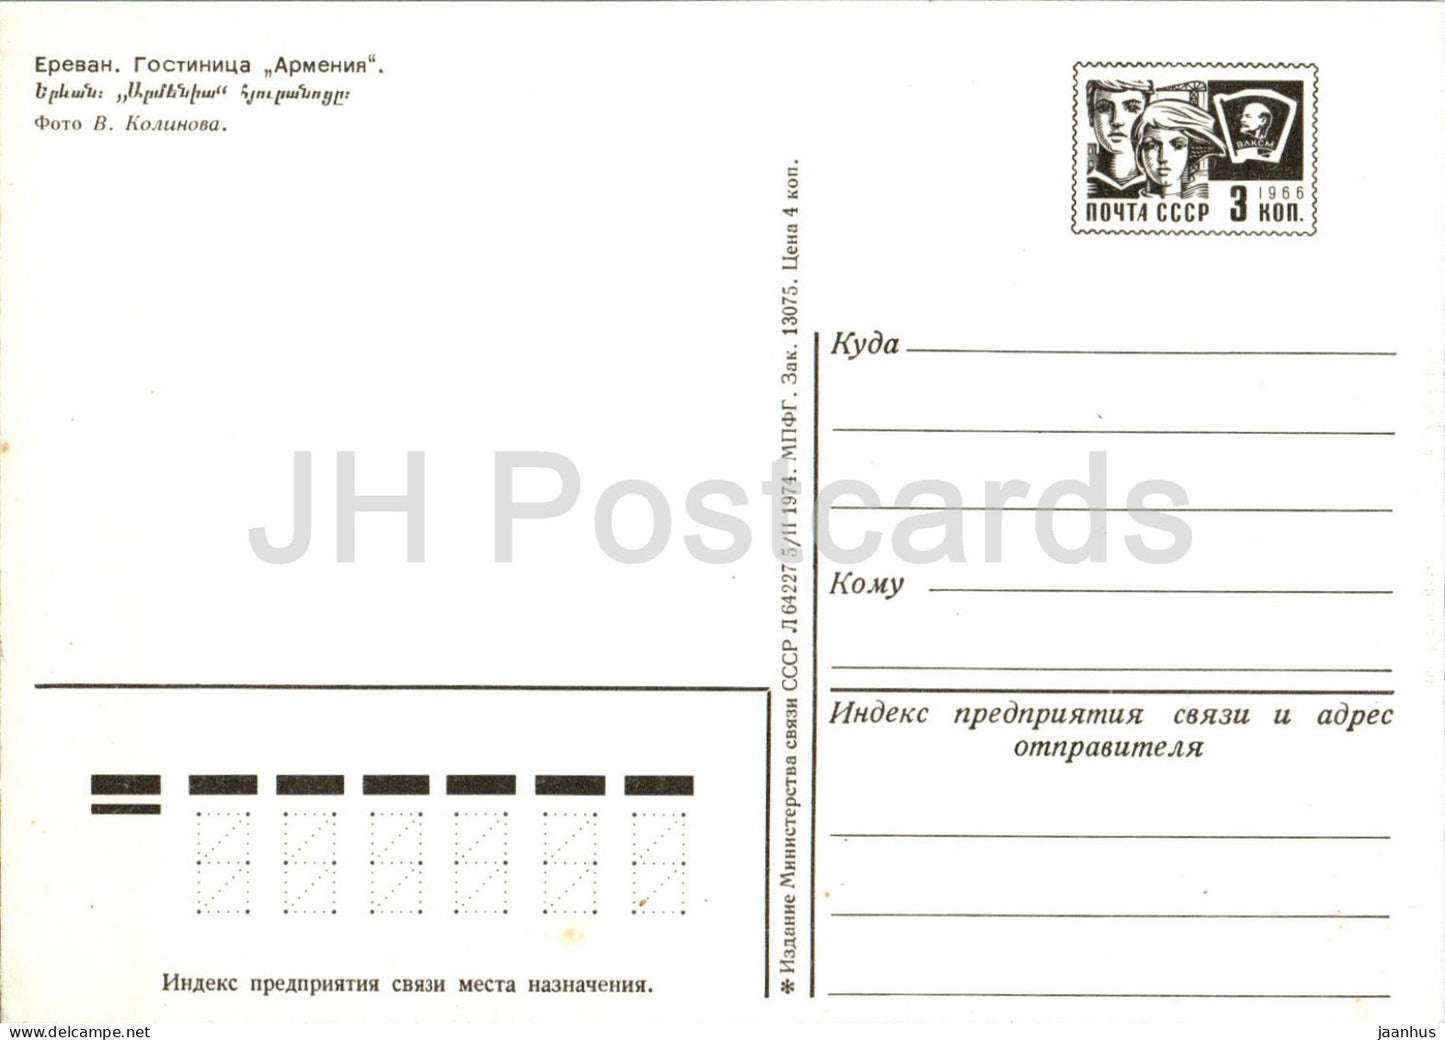 Yerevan - hotel Armenia - postal stationery - 1974 - Armenia USSR - unused